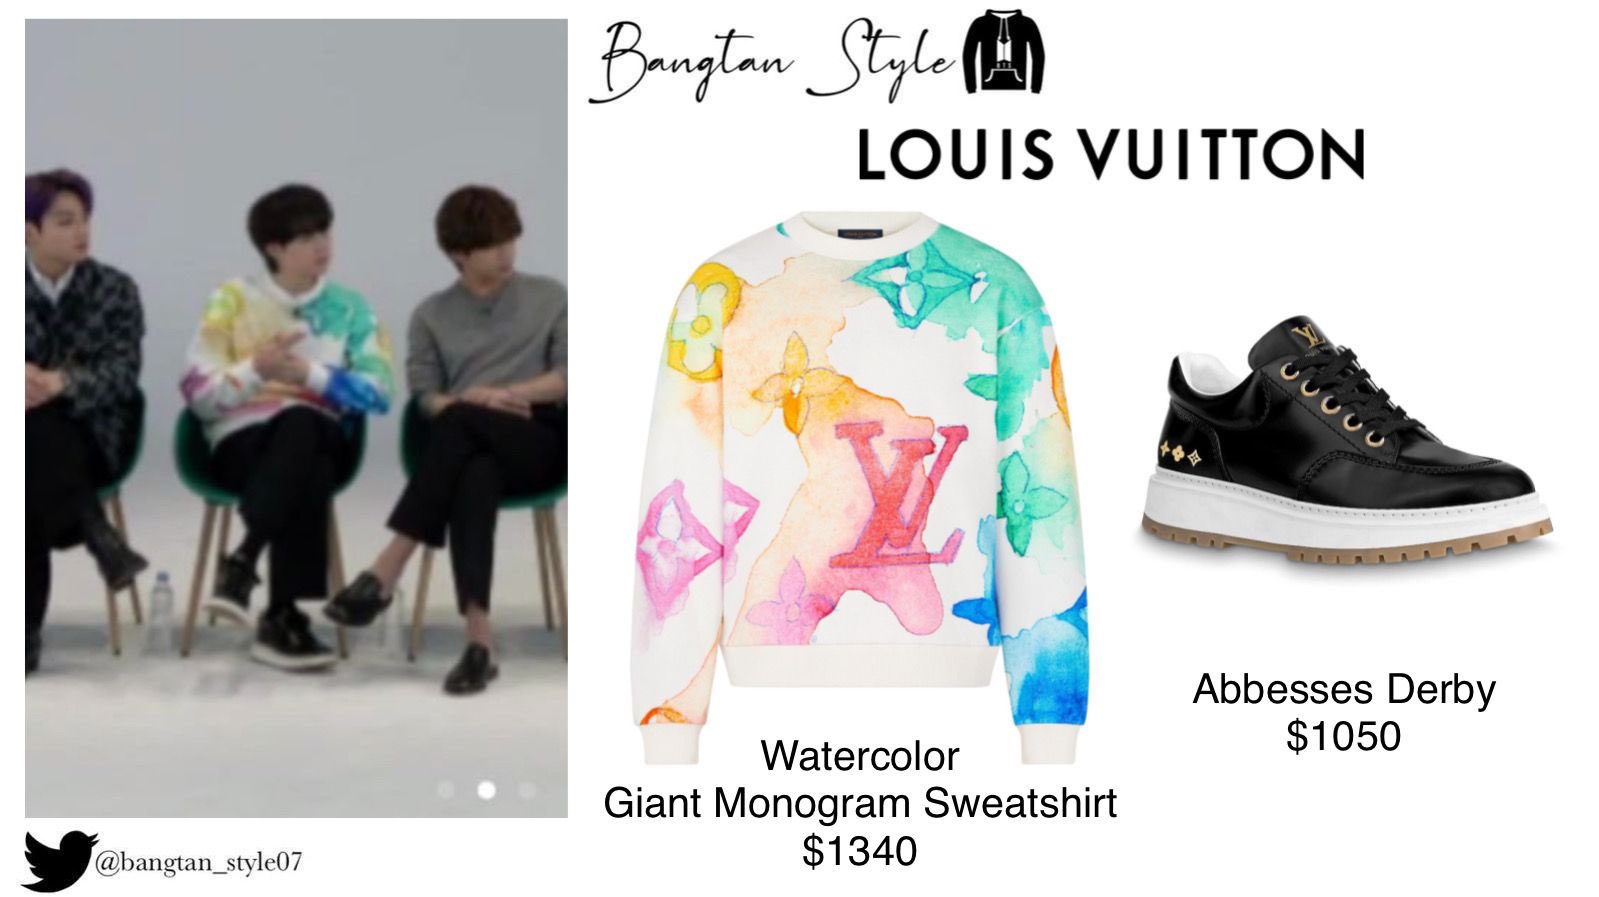 Louis Vuitton  Watercolor Giant Monogram Sweatshirt Description